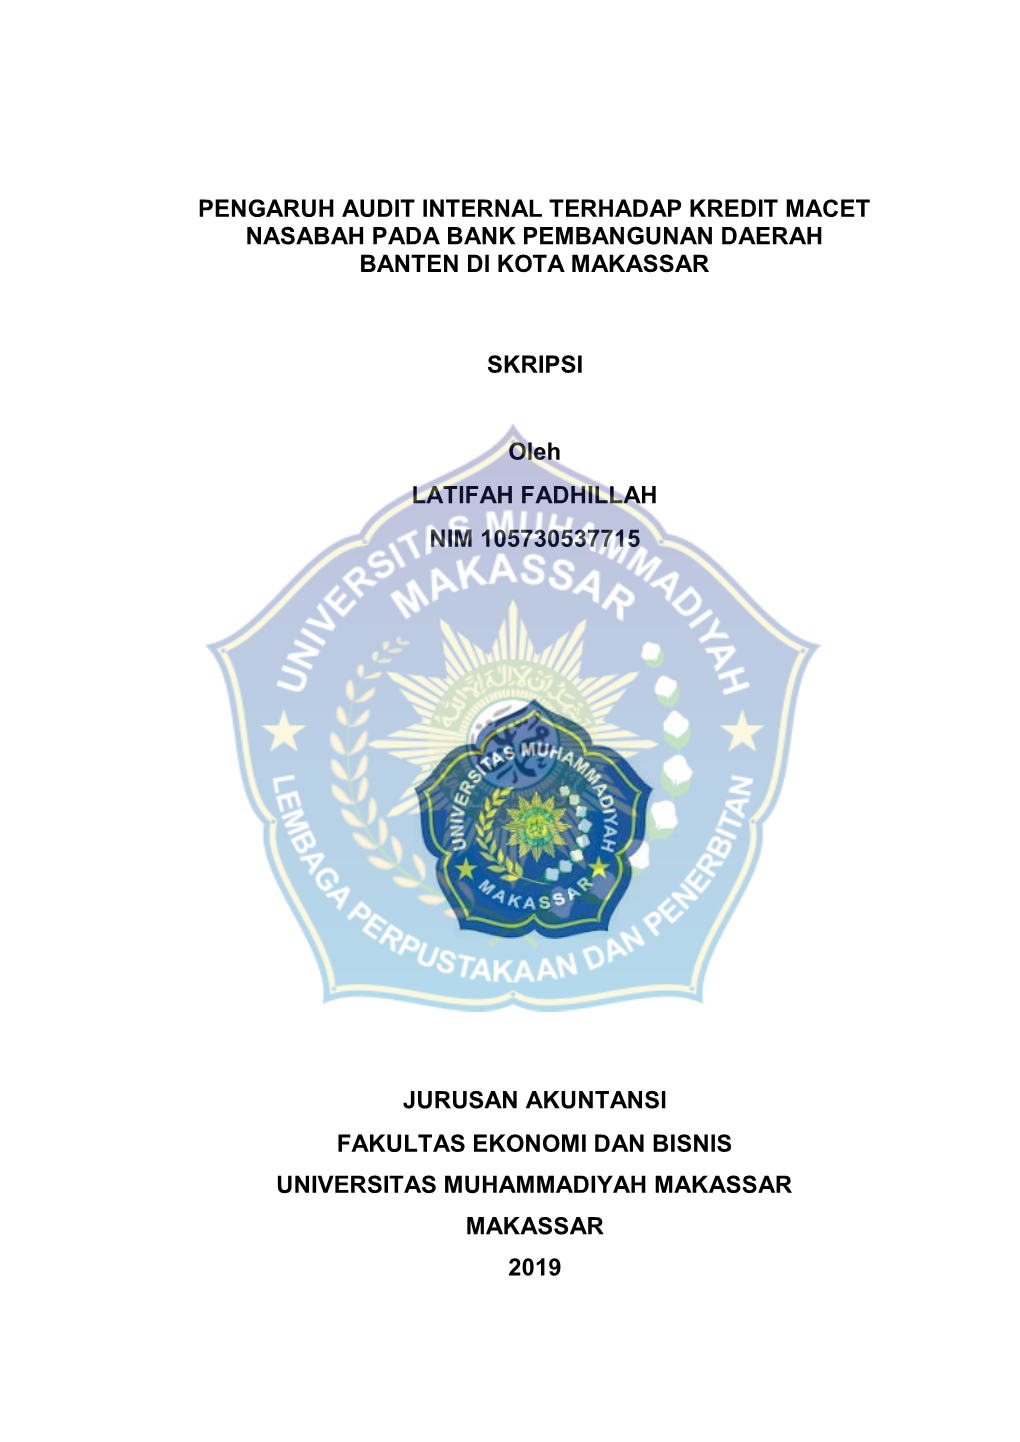 Pengaruh Audit Internal Terhadap Kredit Macet Nasabah Pada Bank Pembangunan Daerah Banten Di Kota Makassar